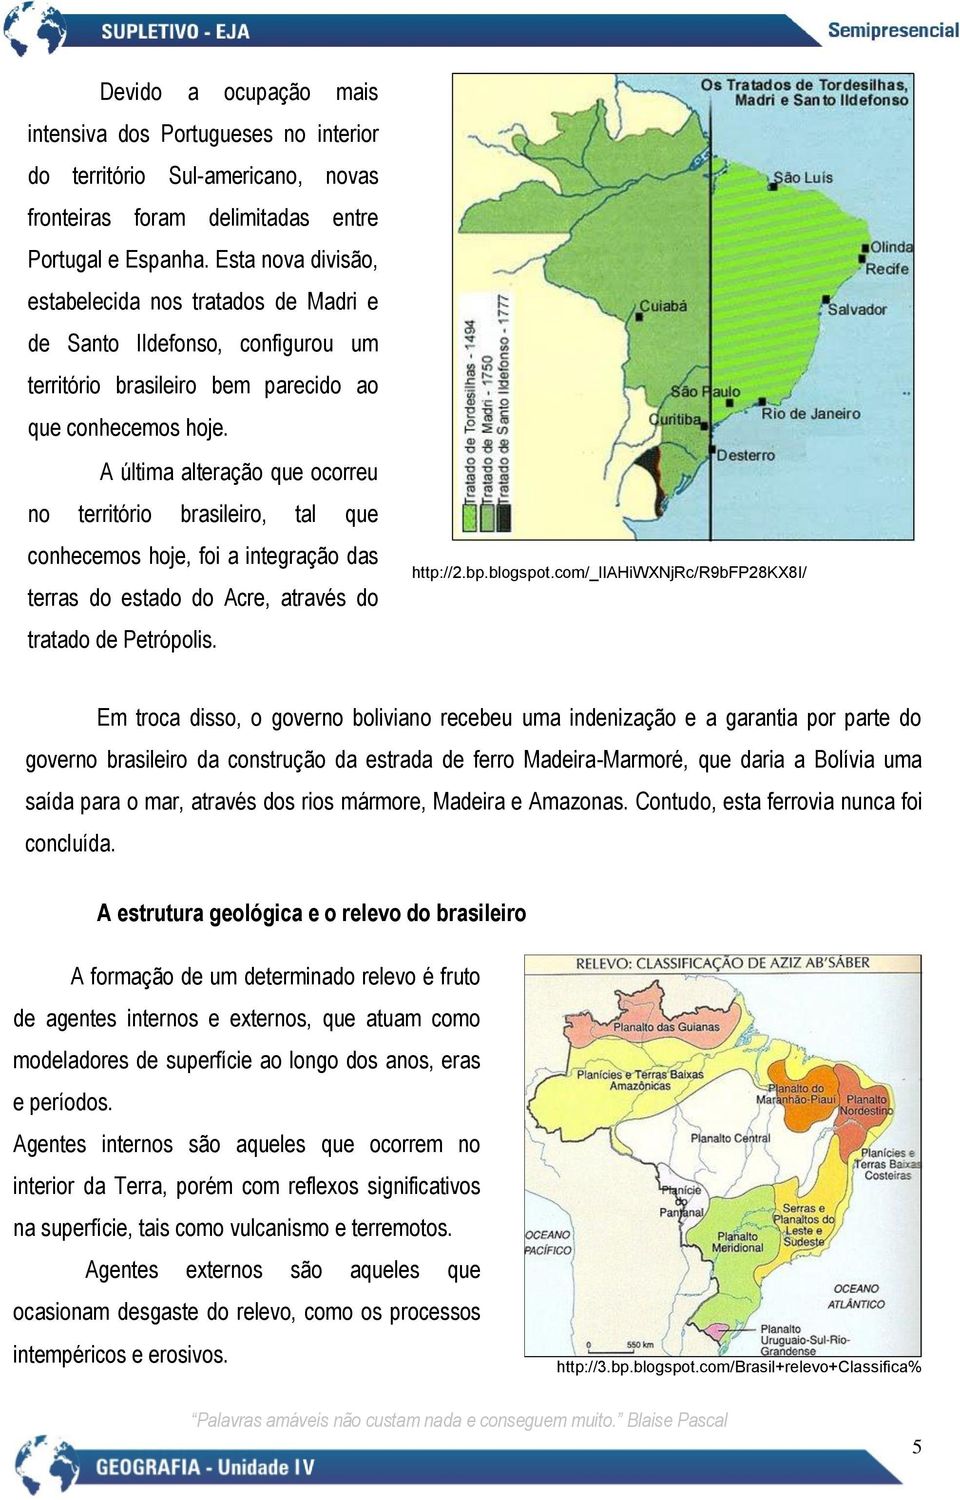 A última alteração que ocorreu no território brasileiro, tal que conhecemos hoje, foi a integração das terras do estado do Acre, através do tratado de Petrópolis. http://2.bp.blogspot.